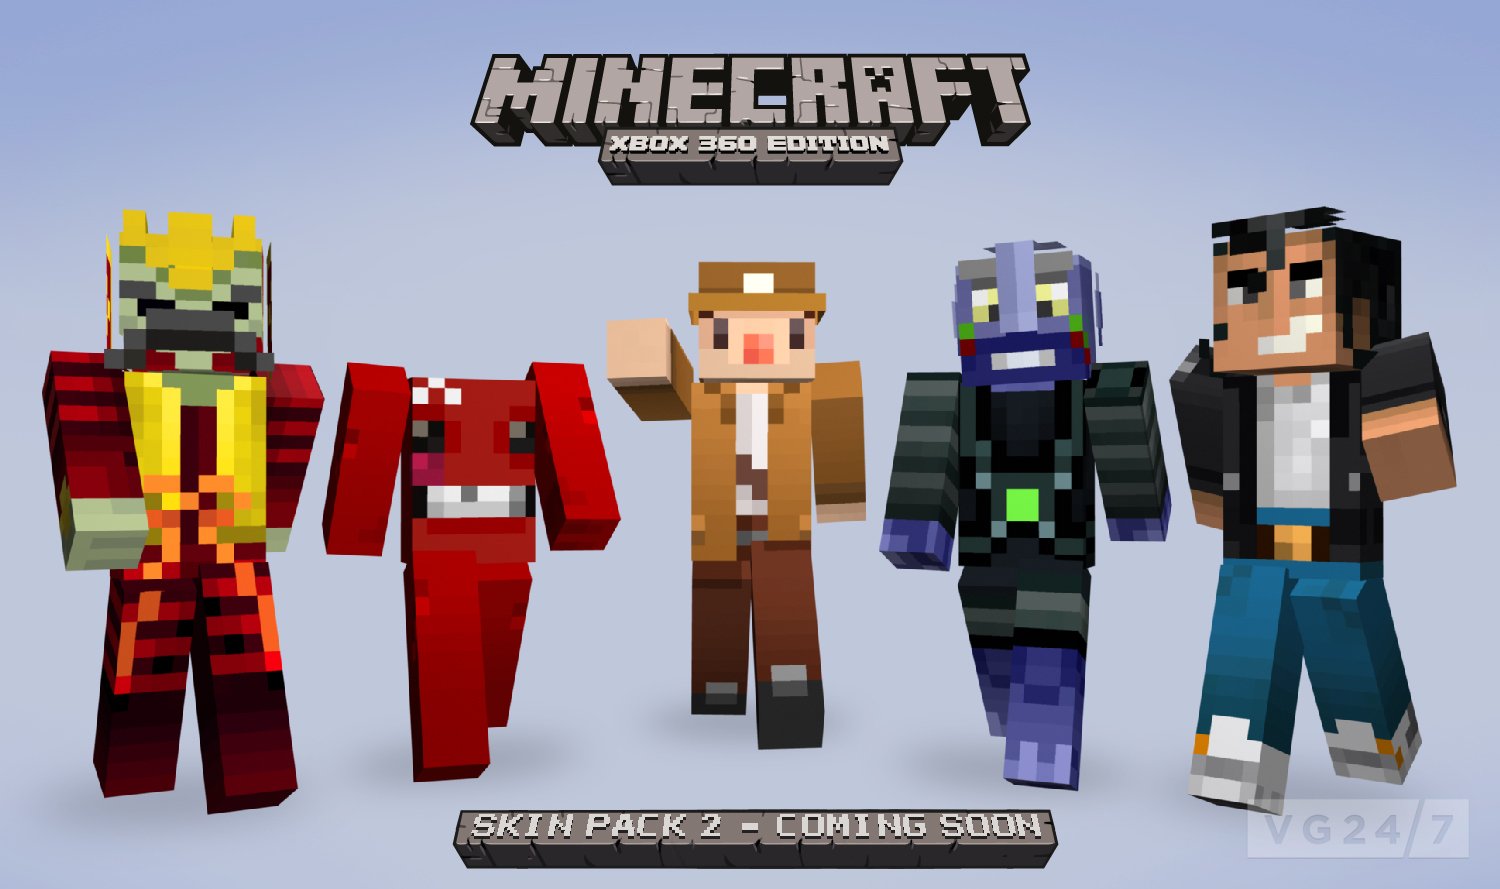 Minecraft Xbox 360 Skin Pack 2 due August 24